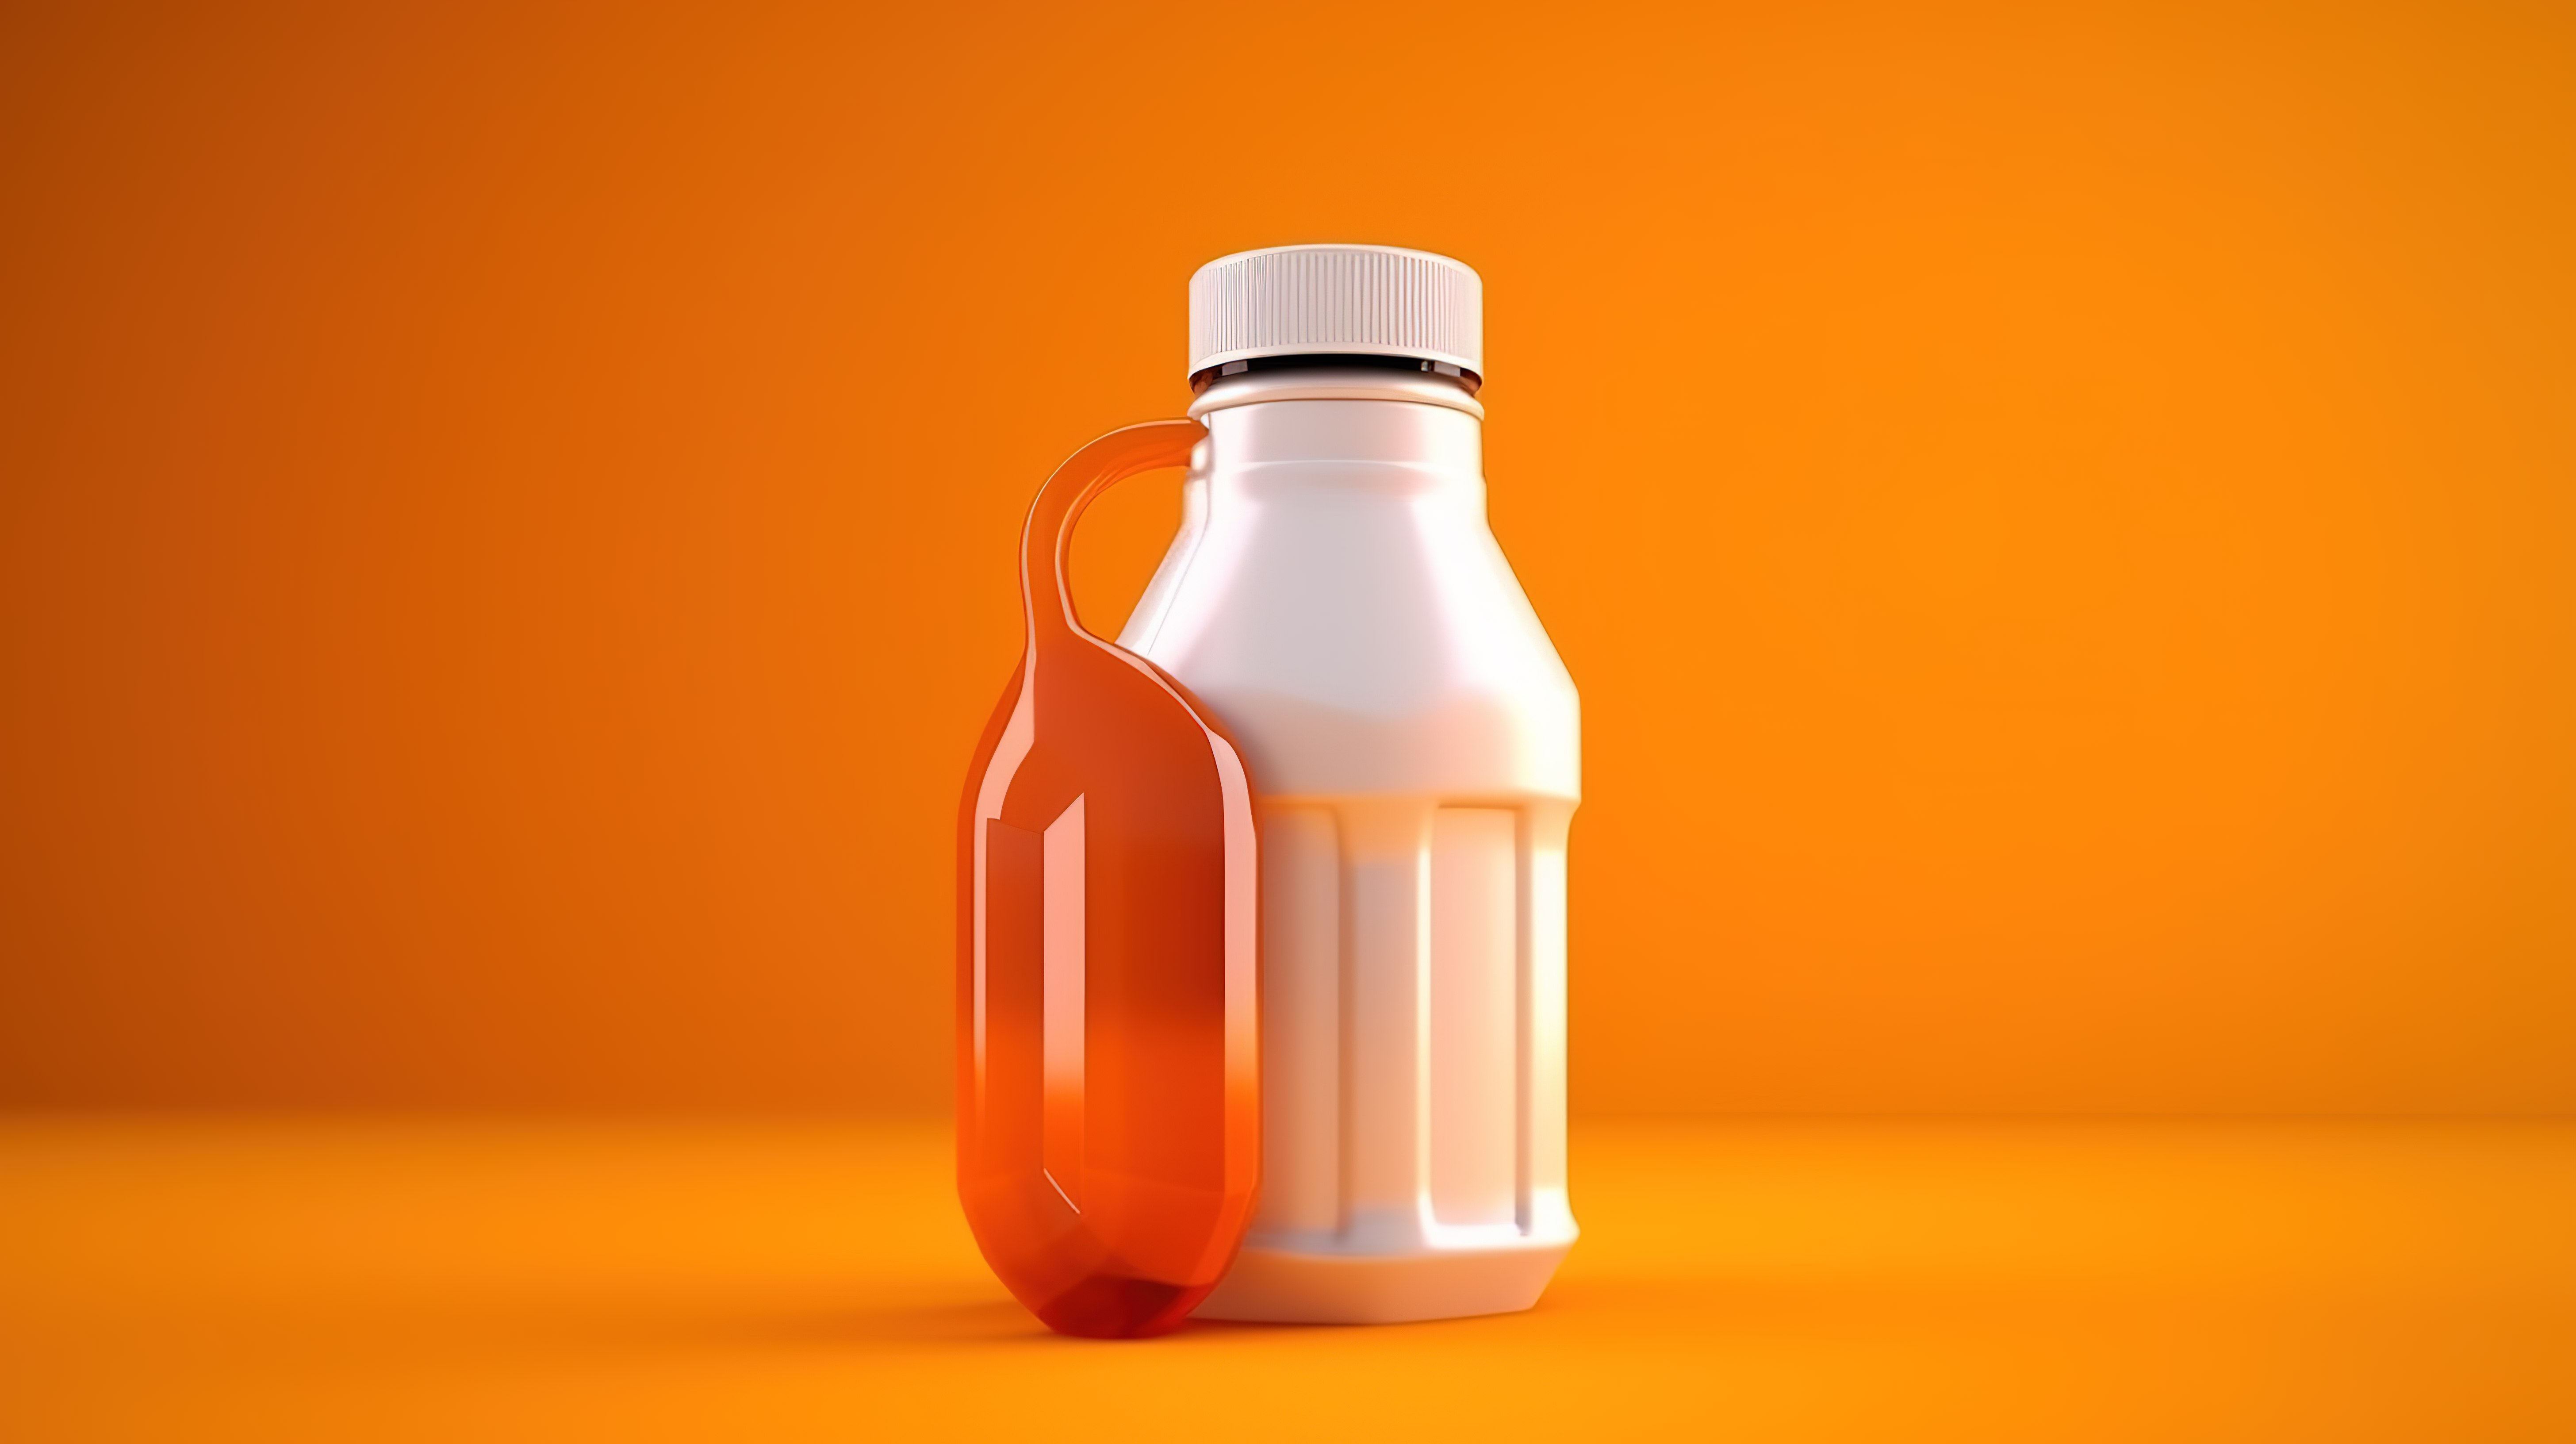 橙色背景上白色塑料糖浆瓶的 3D 渲染图片